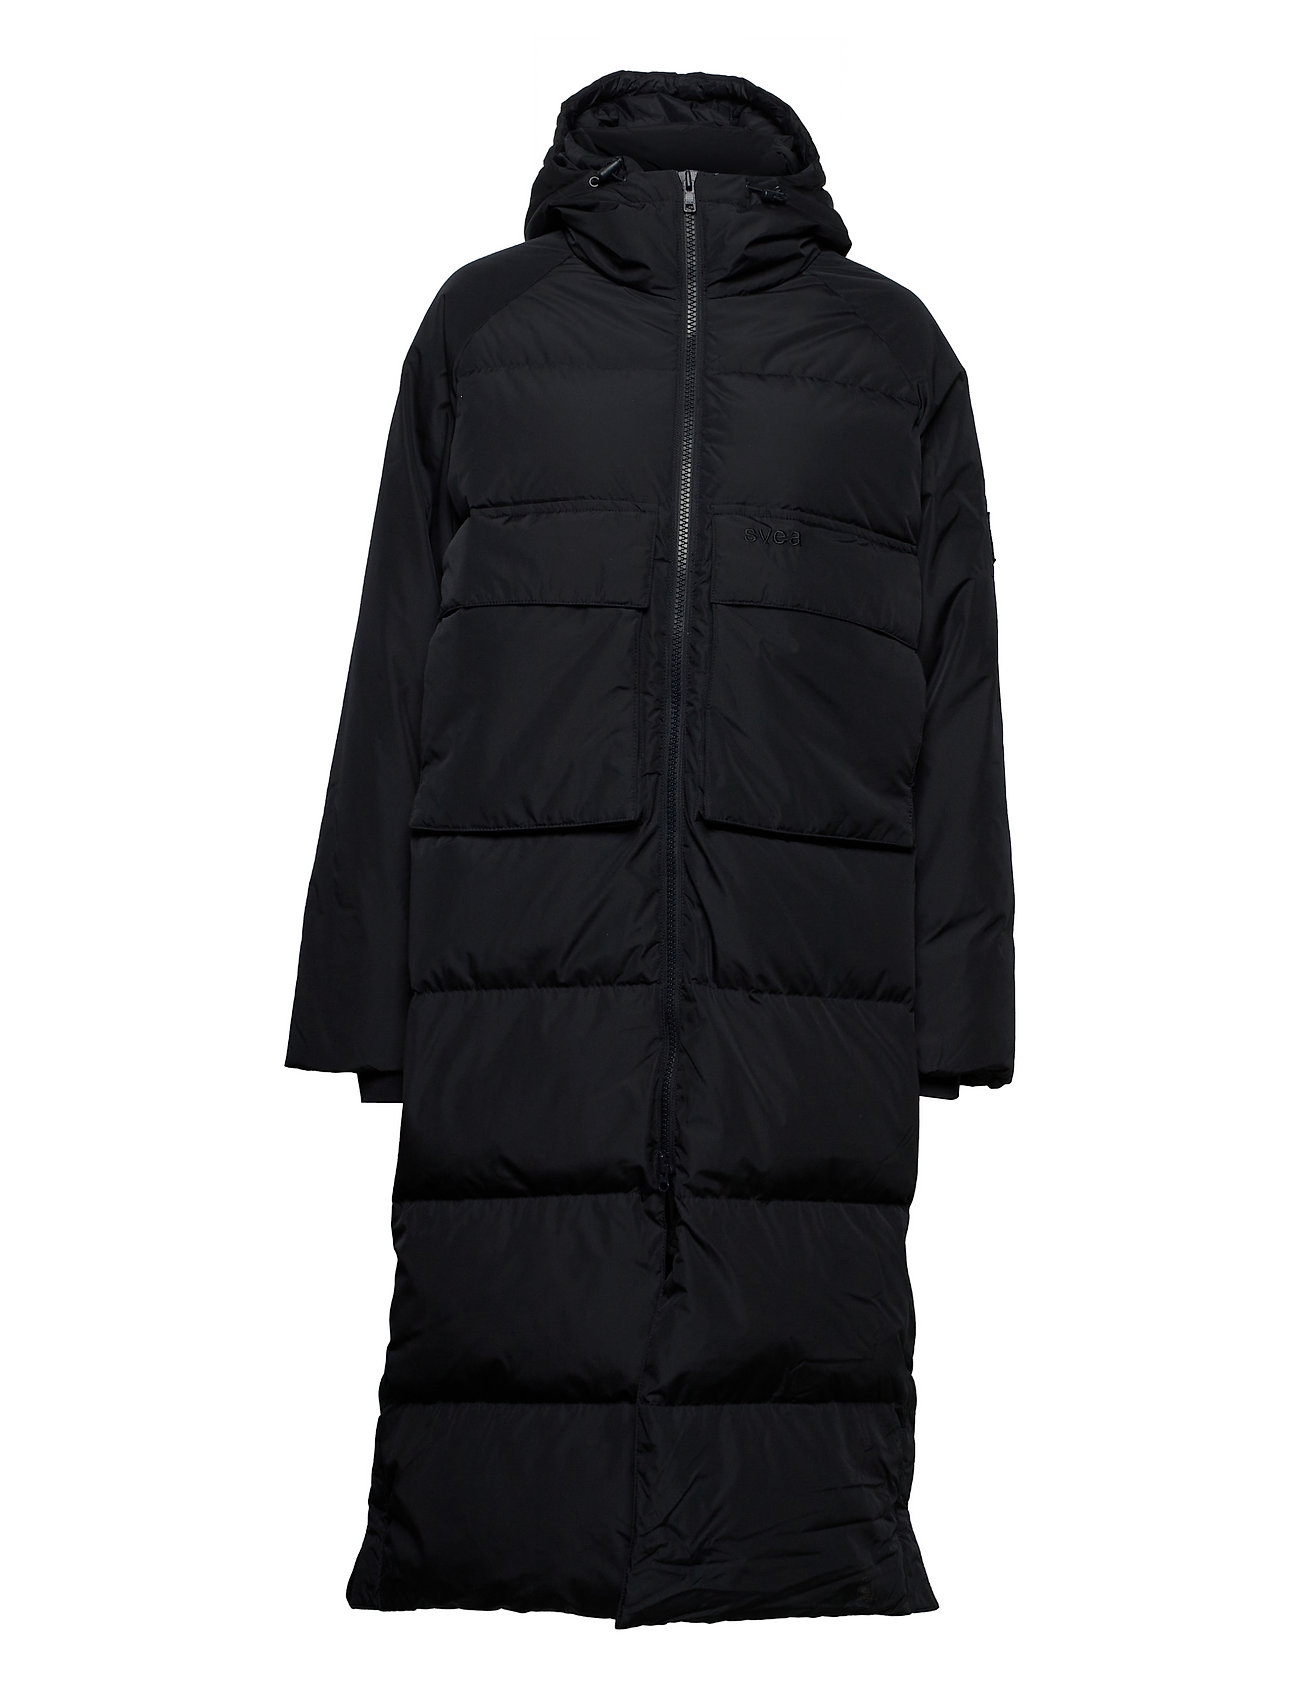 Svea W. Long Winter Coat - 137.63 €. Buy Padded Coats from Svea online ...